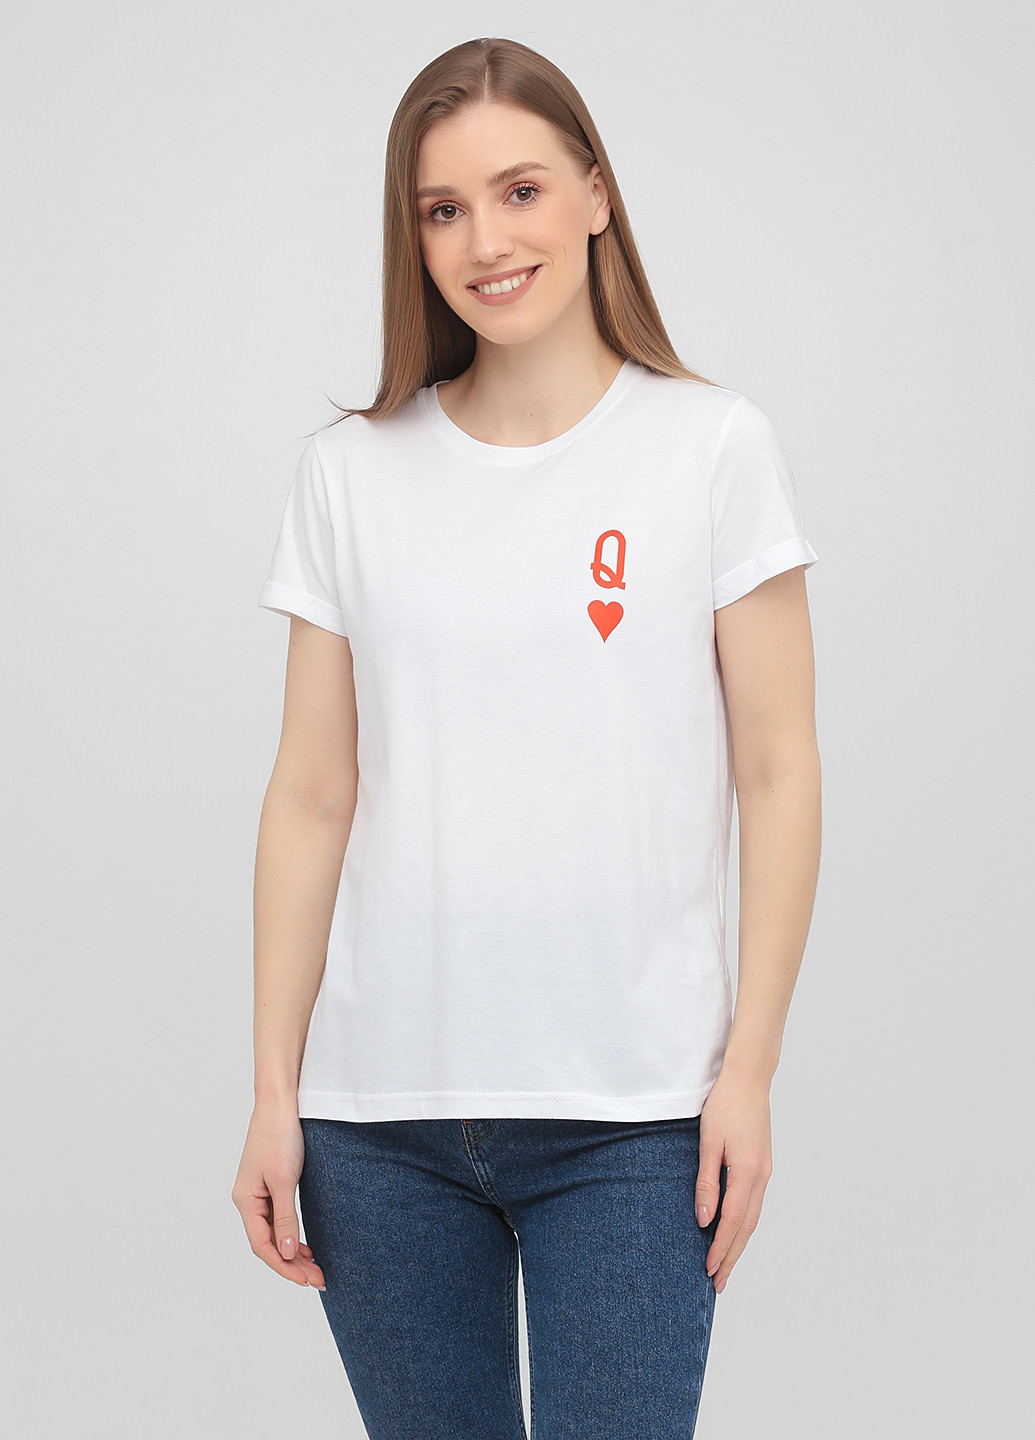 Белая летняя футболка базовая с подворотом, red queen KASTA design